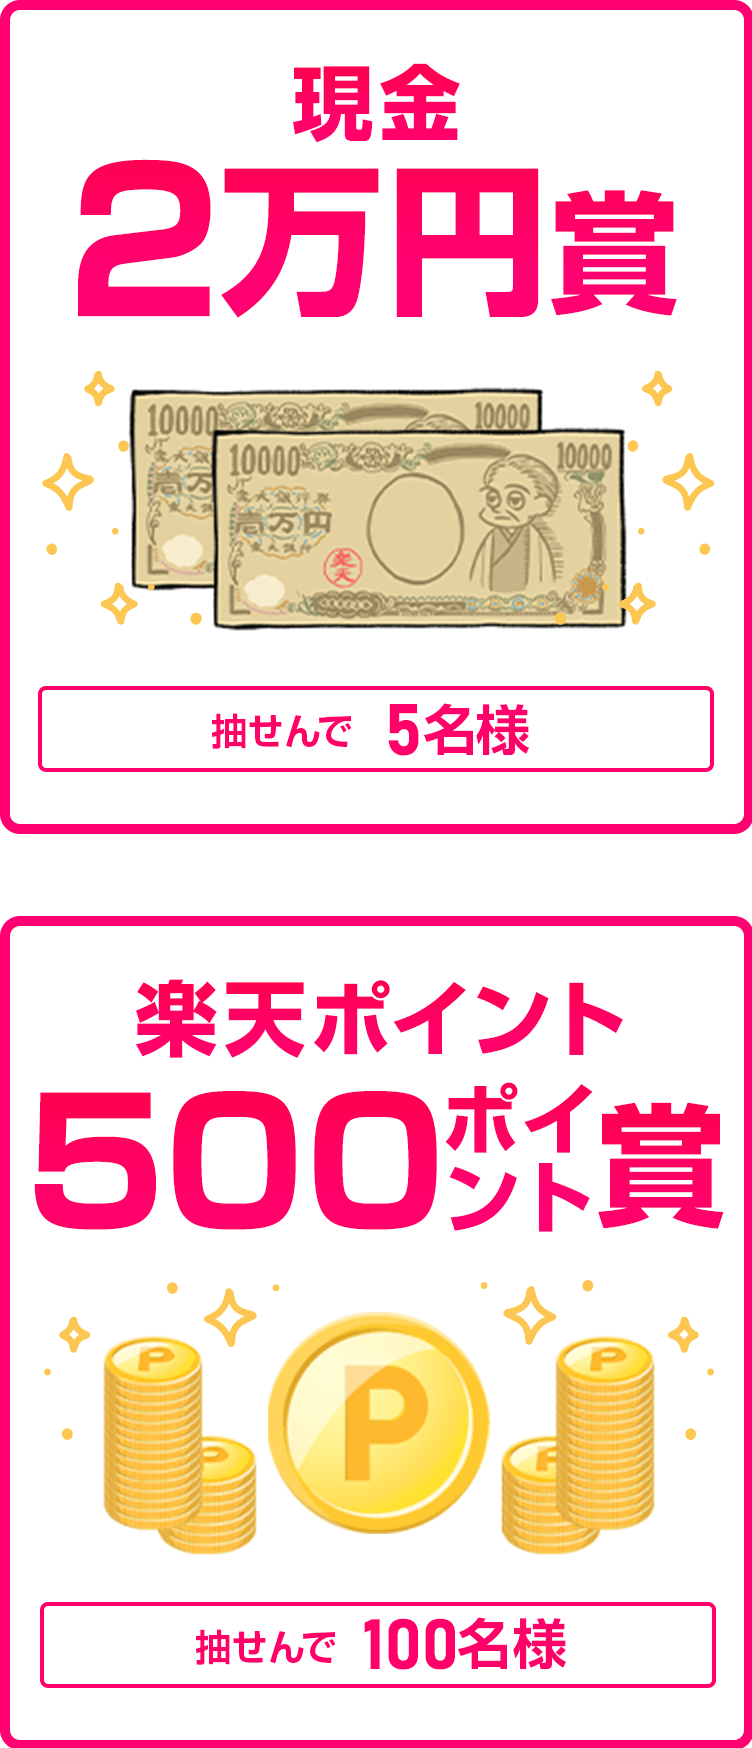 
                
                  現金2万円賞
                  抽せんで5名さまに
                  
                  500ポイント賞
                  抽せんで100名さまに
                  
                